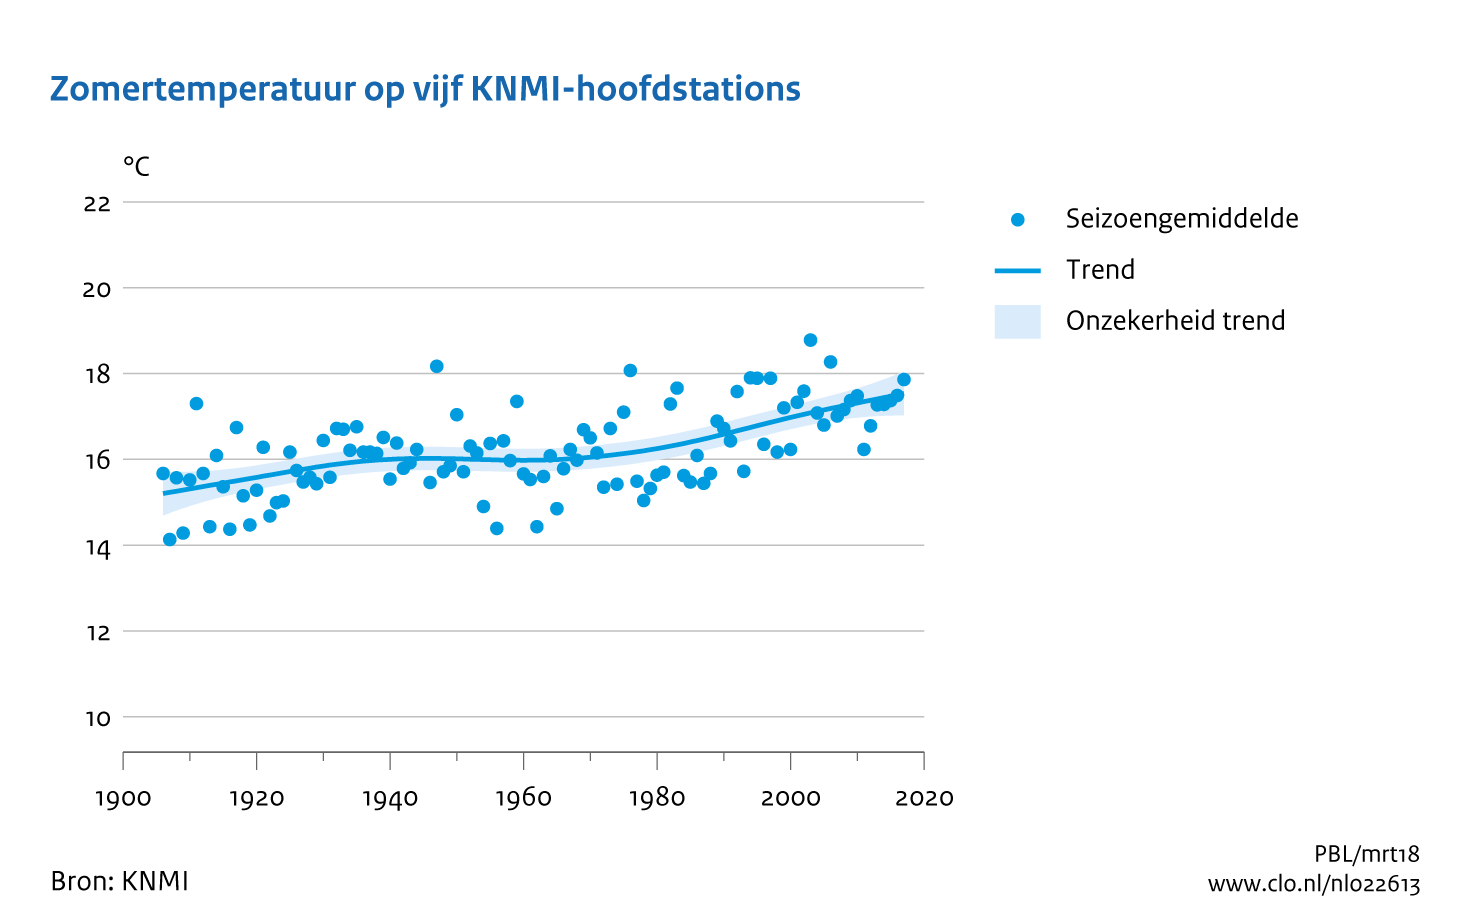 Figuur zomertemperatuur op 5 KNMI -hoofdstations  Nederland. In de rest van de tekst wordt deze figuur uitgebreider uitgelegd.